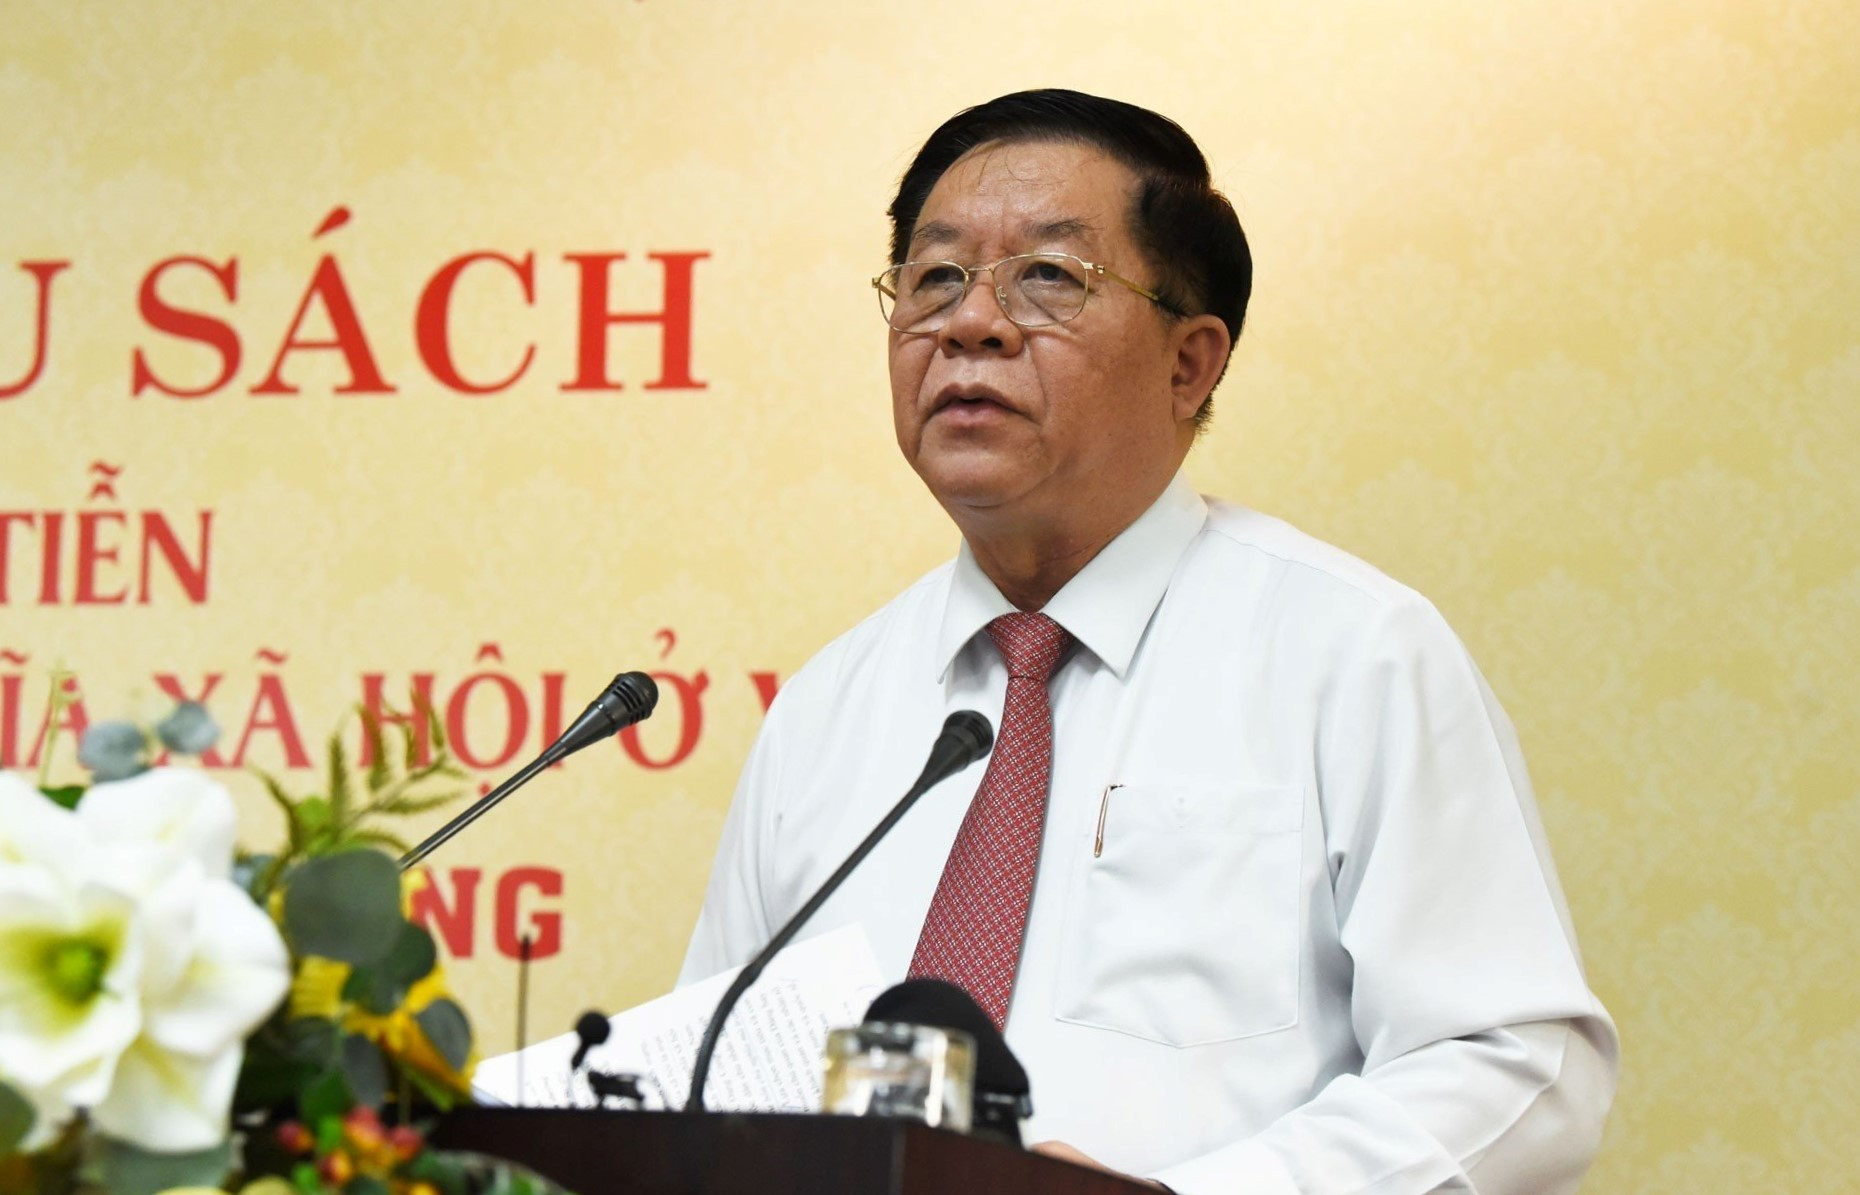 Trưởng ban Tuyên giáo Trung ương Nguyễn Trọng Nghĩa phát biểu tại buổi lễ.

